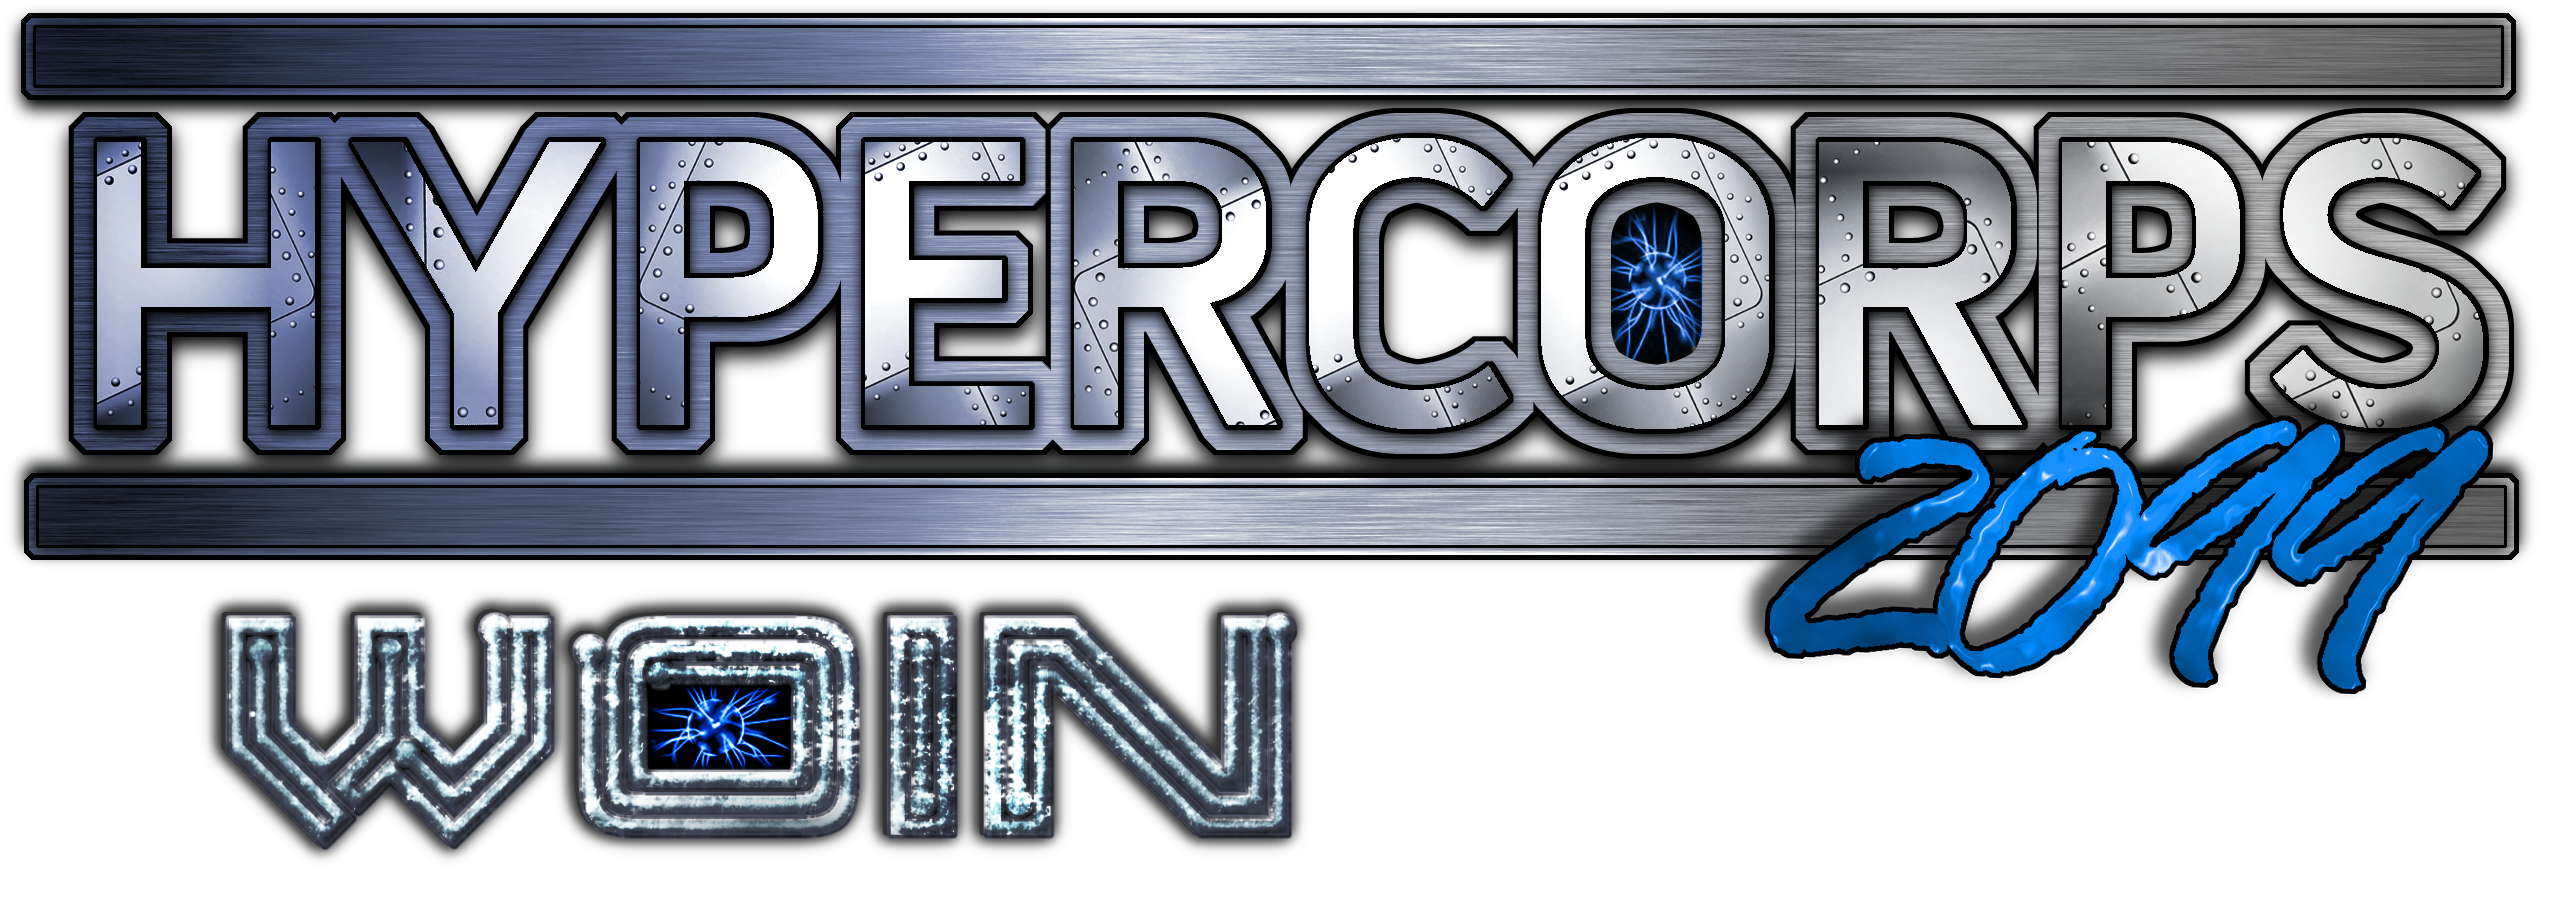 HYPERCORPS_2099 WOIN logo.png